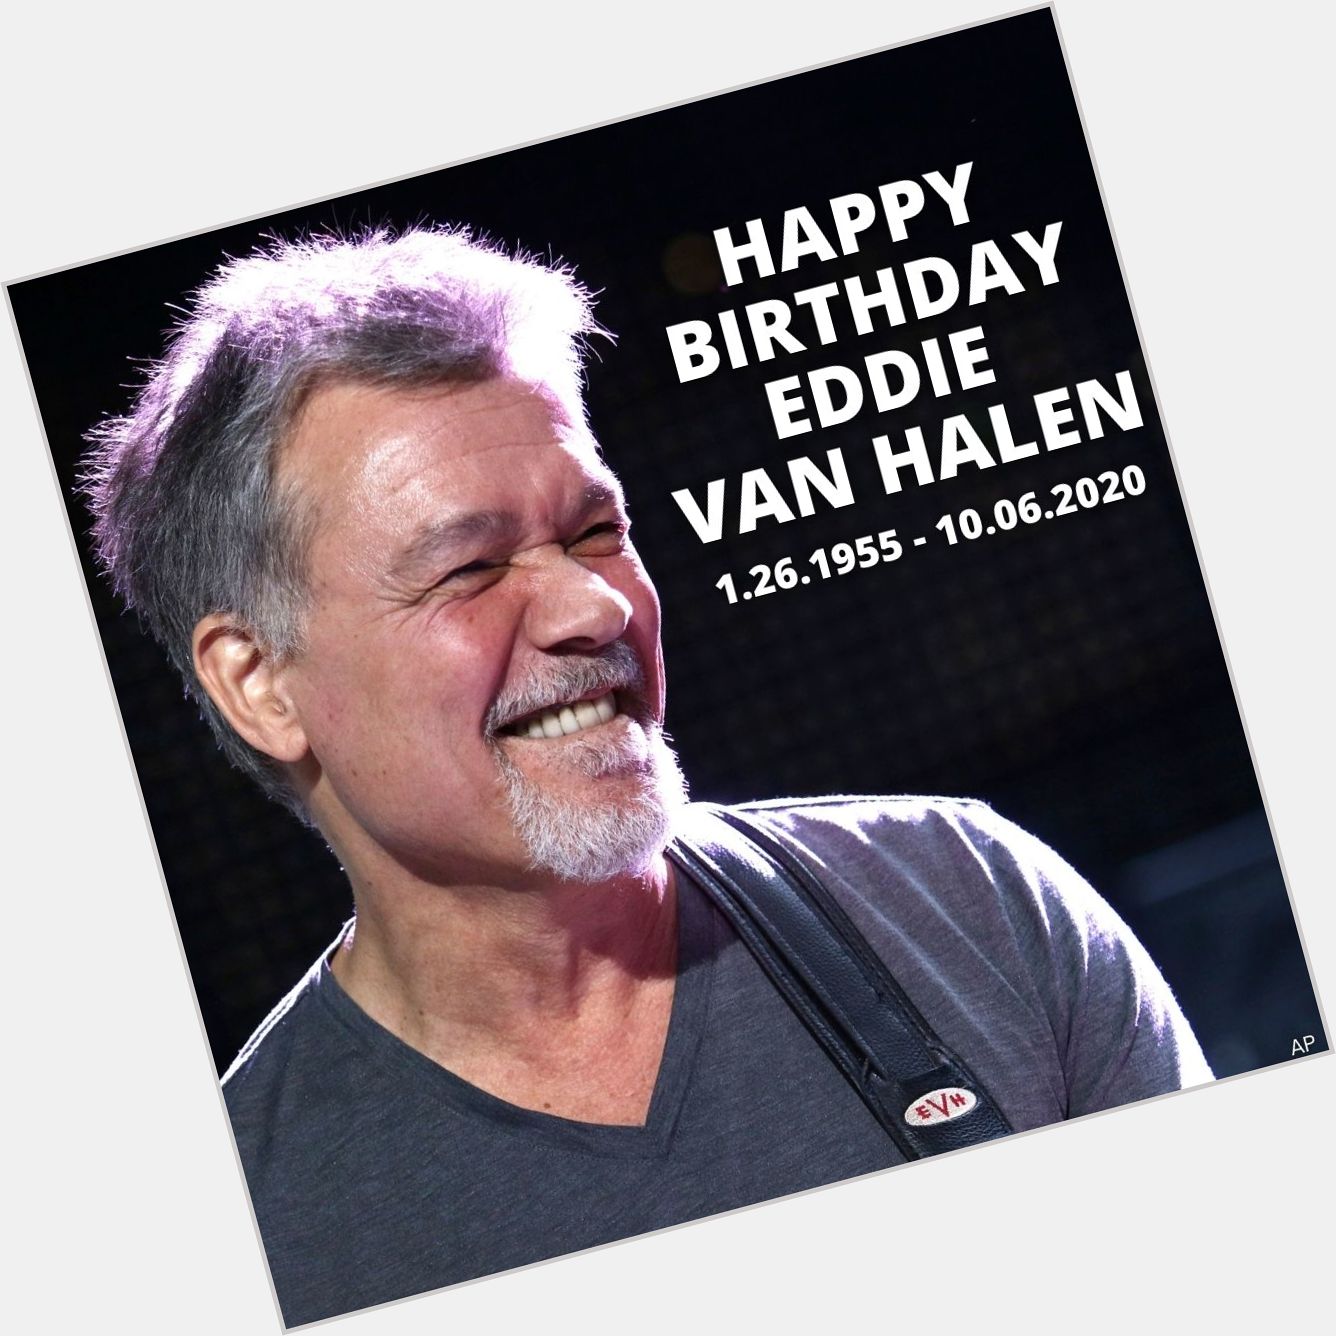 Happy Birthday to Eddie Van Halen. The legend would have been 66 today. 